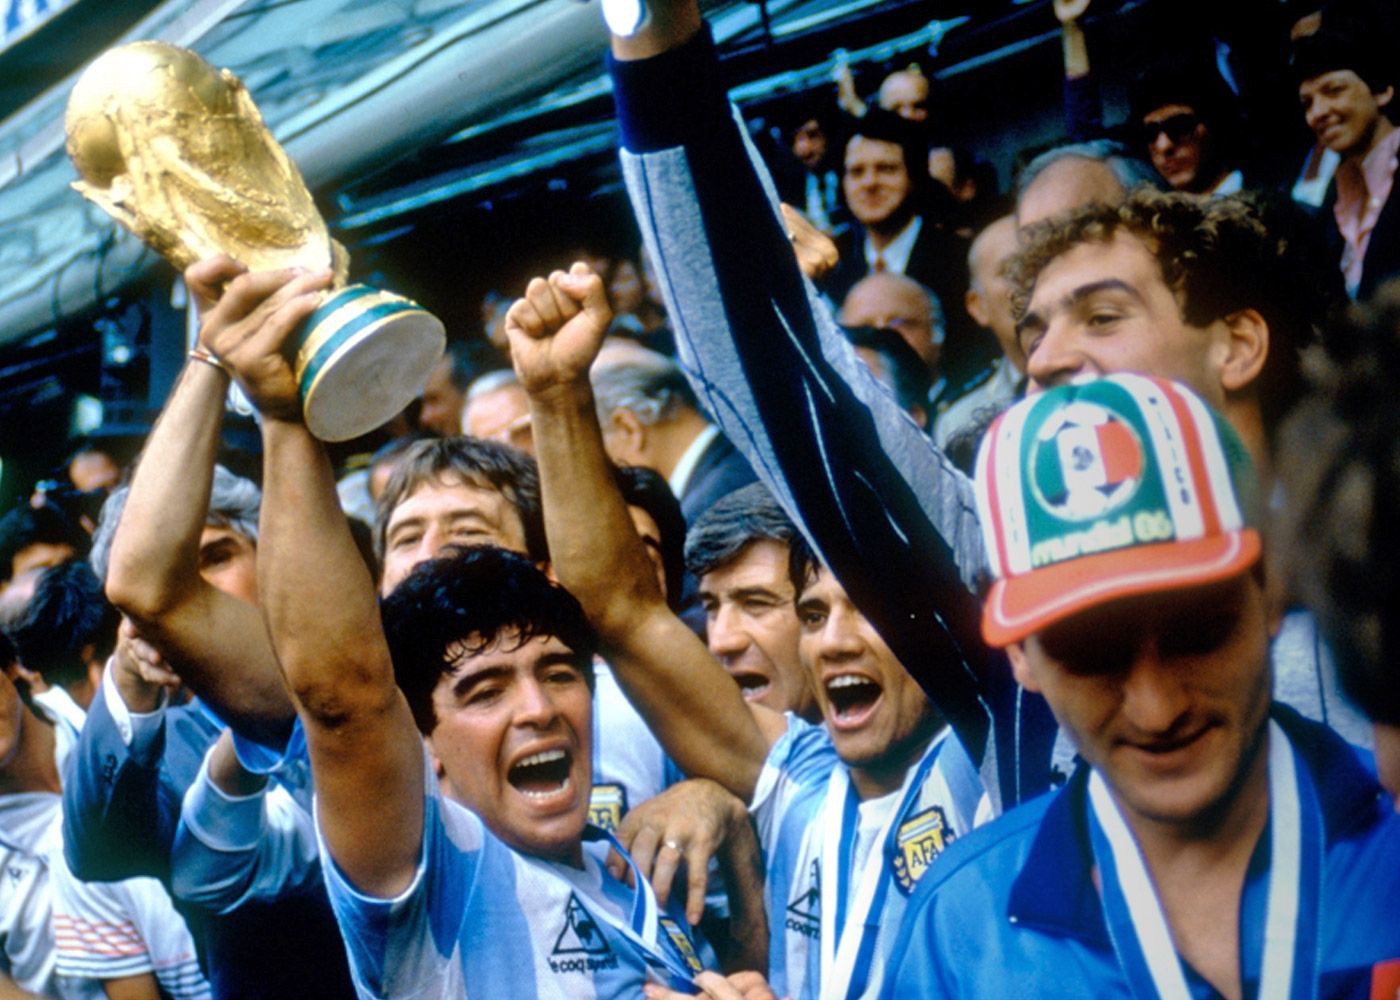 Lịch sử World Cup (Kỳ 4): Khi cả thế giới nằm dưới chân Diego Maradona - Ảnh 1.